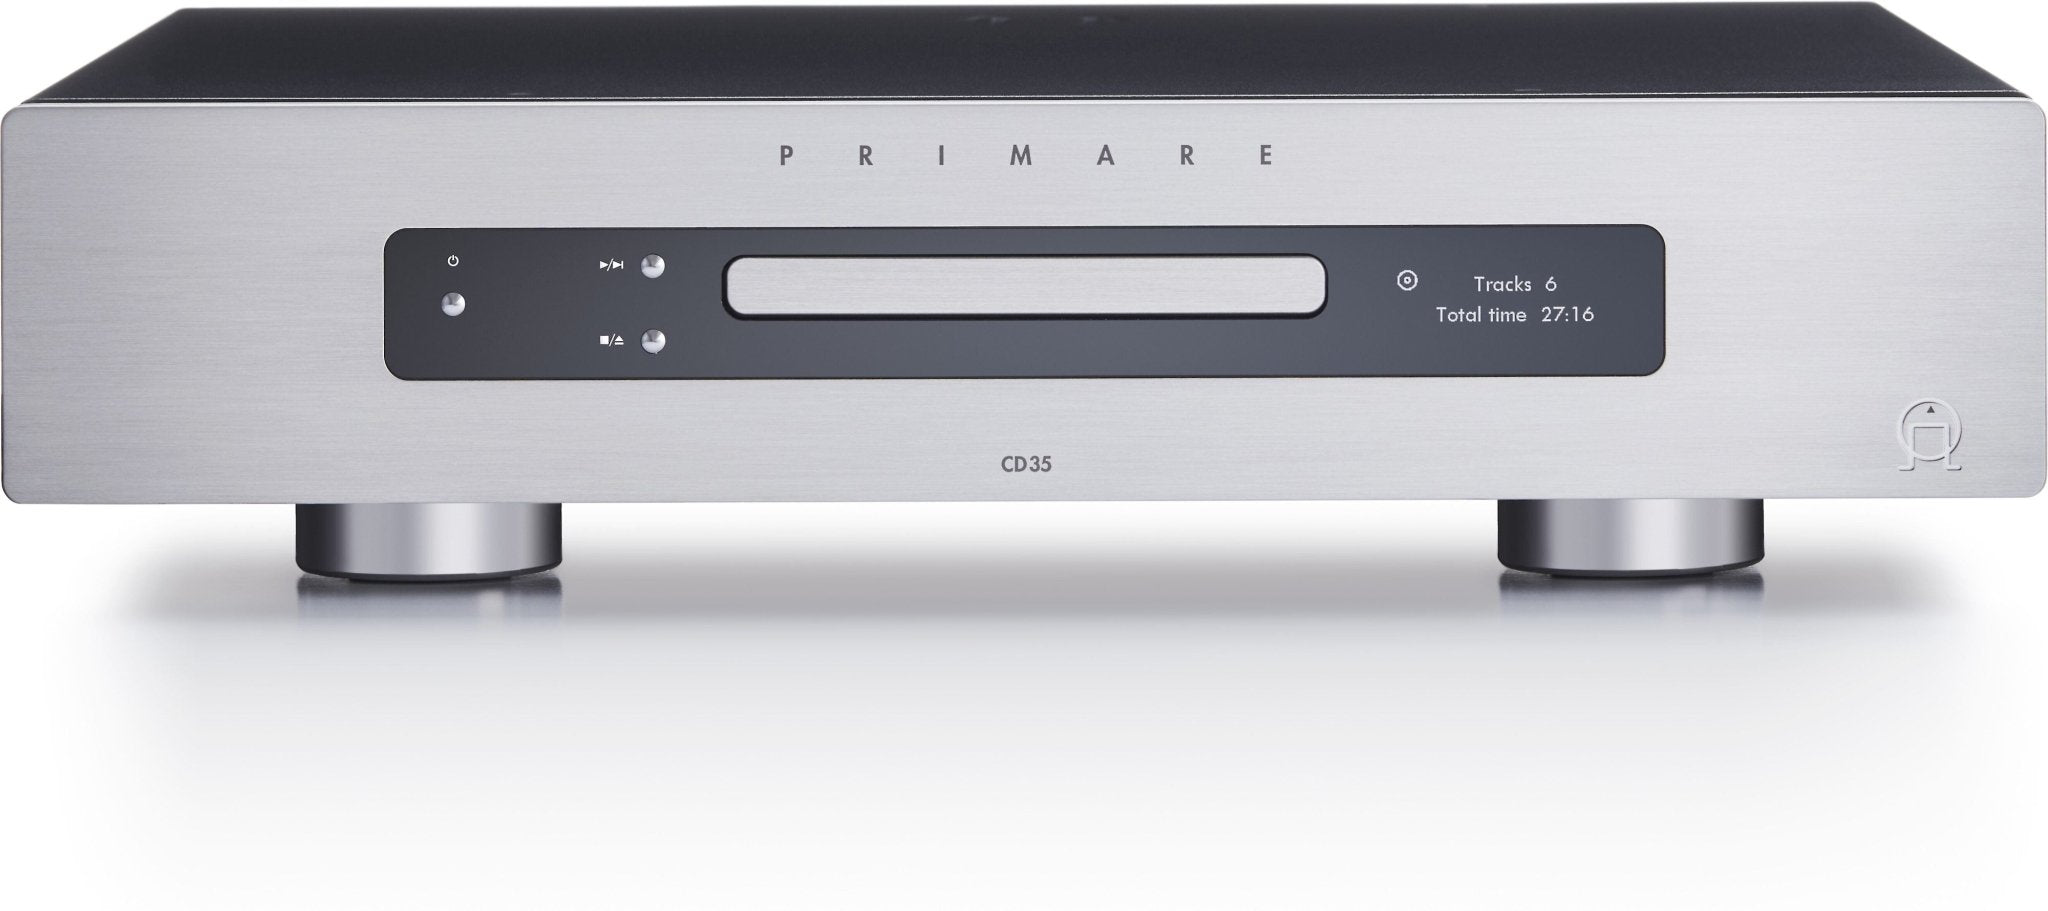 Primare CD35 CD Player - Dreamedia AV